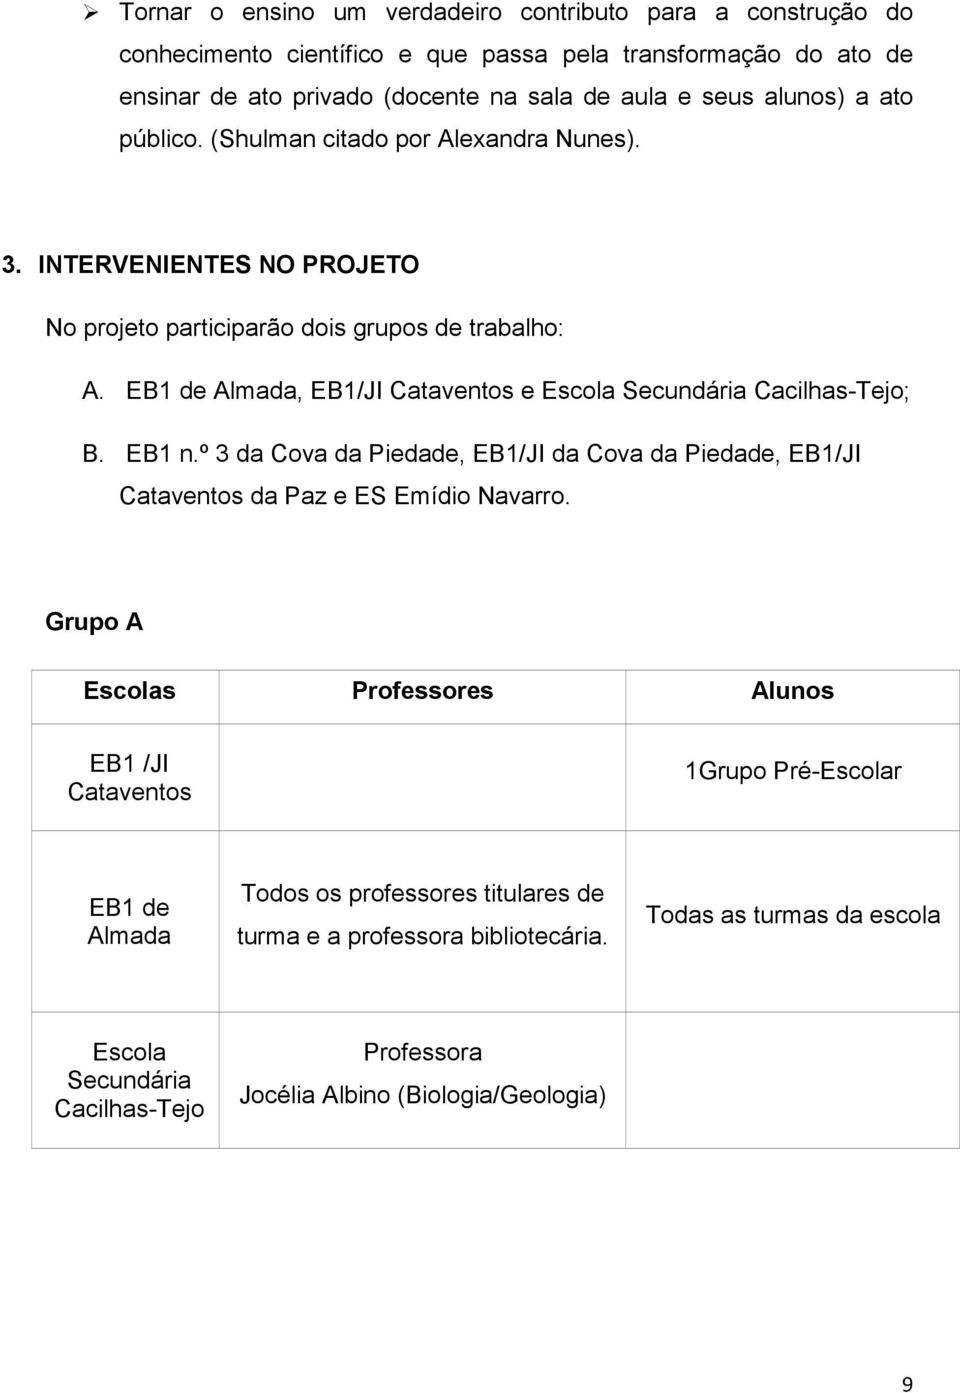 EB1 de Almada, EB1/JI Cataventos e Escola Secundária Cacilhas-Tejo; B. EB1 n.º 3 da Cova da Piedade, EB1/JI da Cova da Piedade, EB1/JI Cataventos da Paz e ES Emídio Navarro.